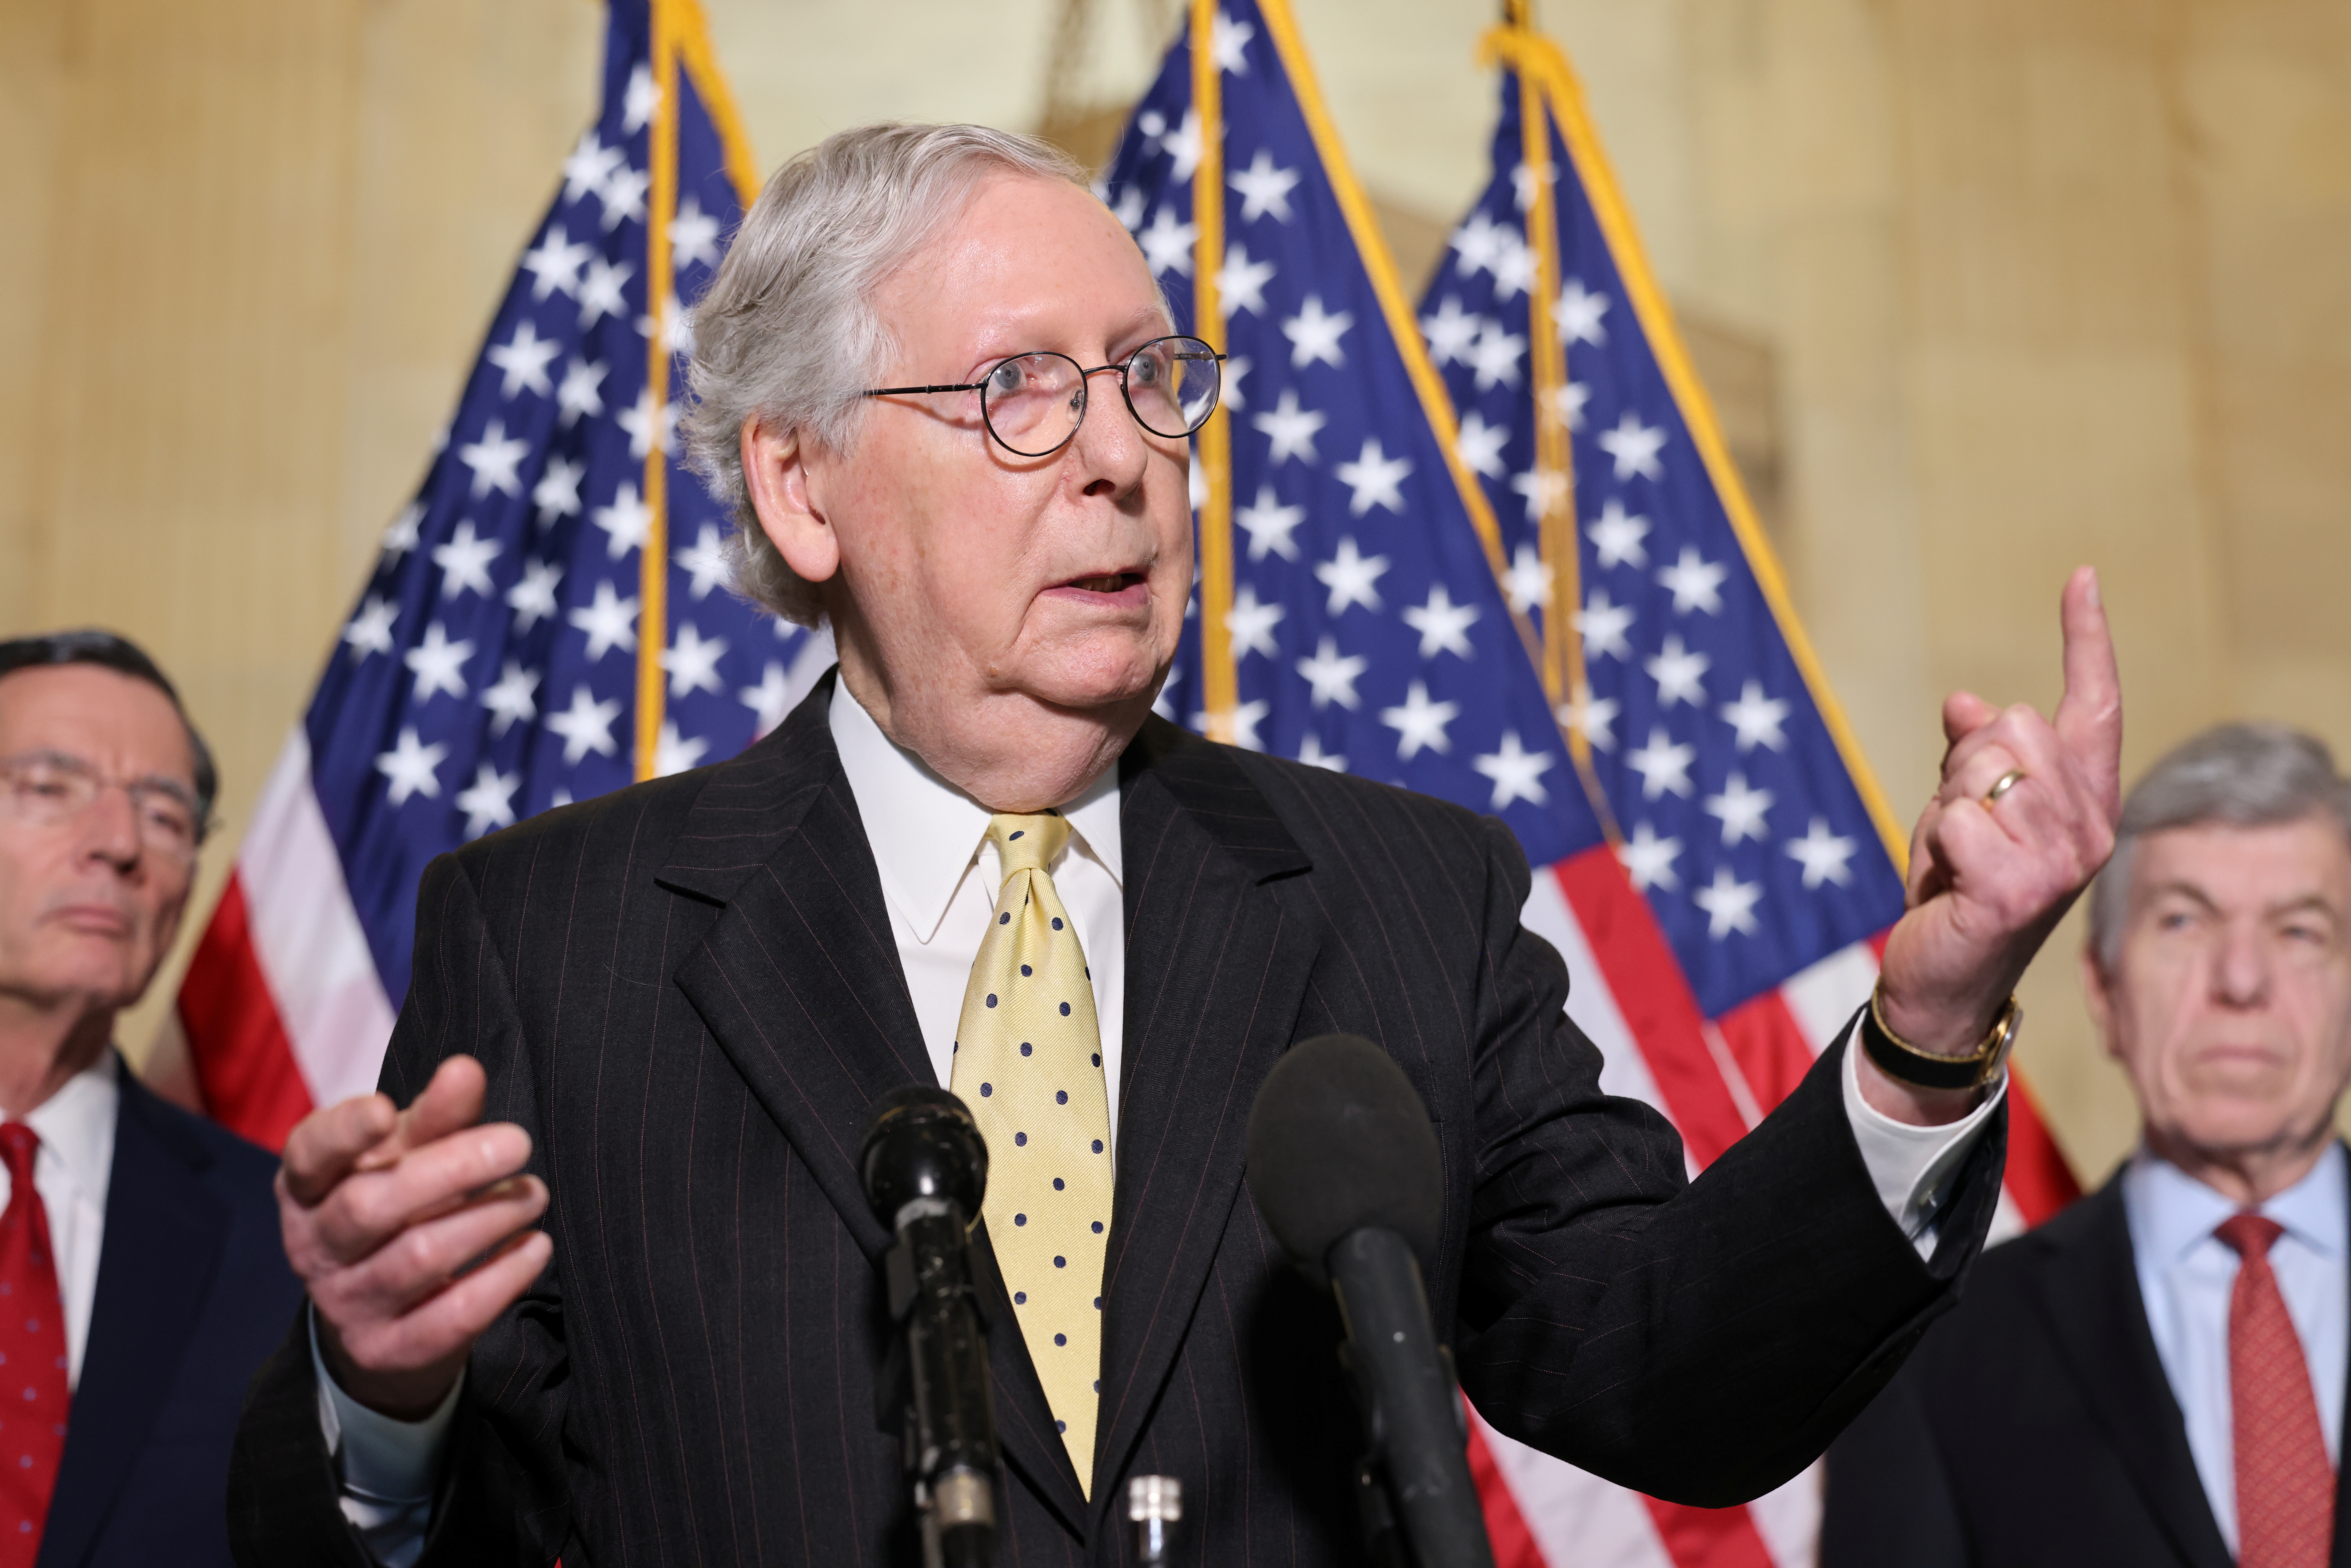 El partido Republicano bloqueó en el Senado la creación de una comisión para investigar el asalto al Capitolio de Estados Unidos